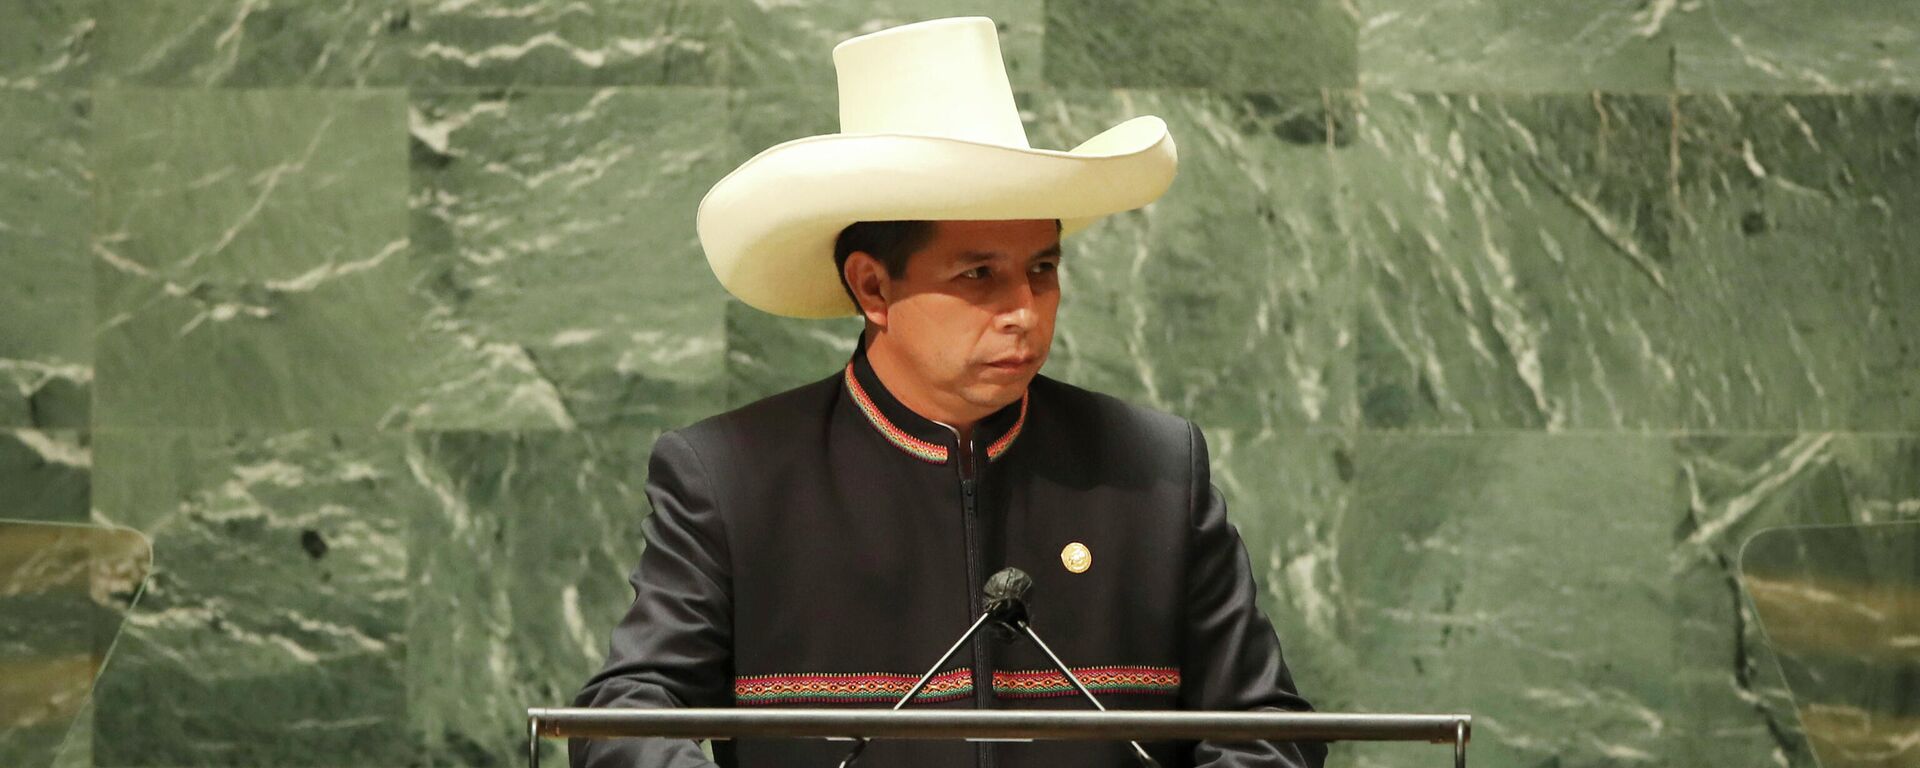 El presidente de Perú, Pedro Castillo, durante la Asamblea General de Naciones Unidas en 2021 - Sputnik Mundo, 1920, 08.02.2022